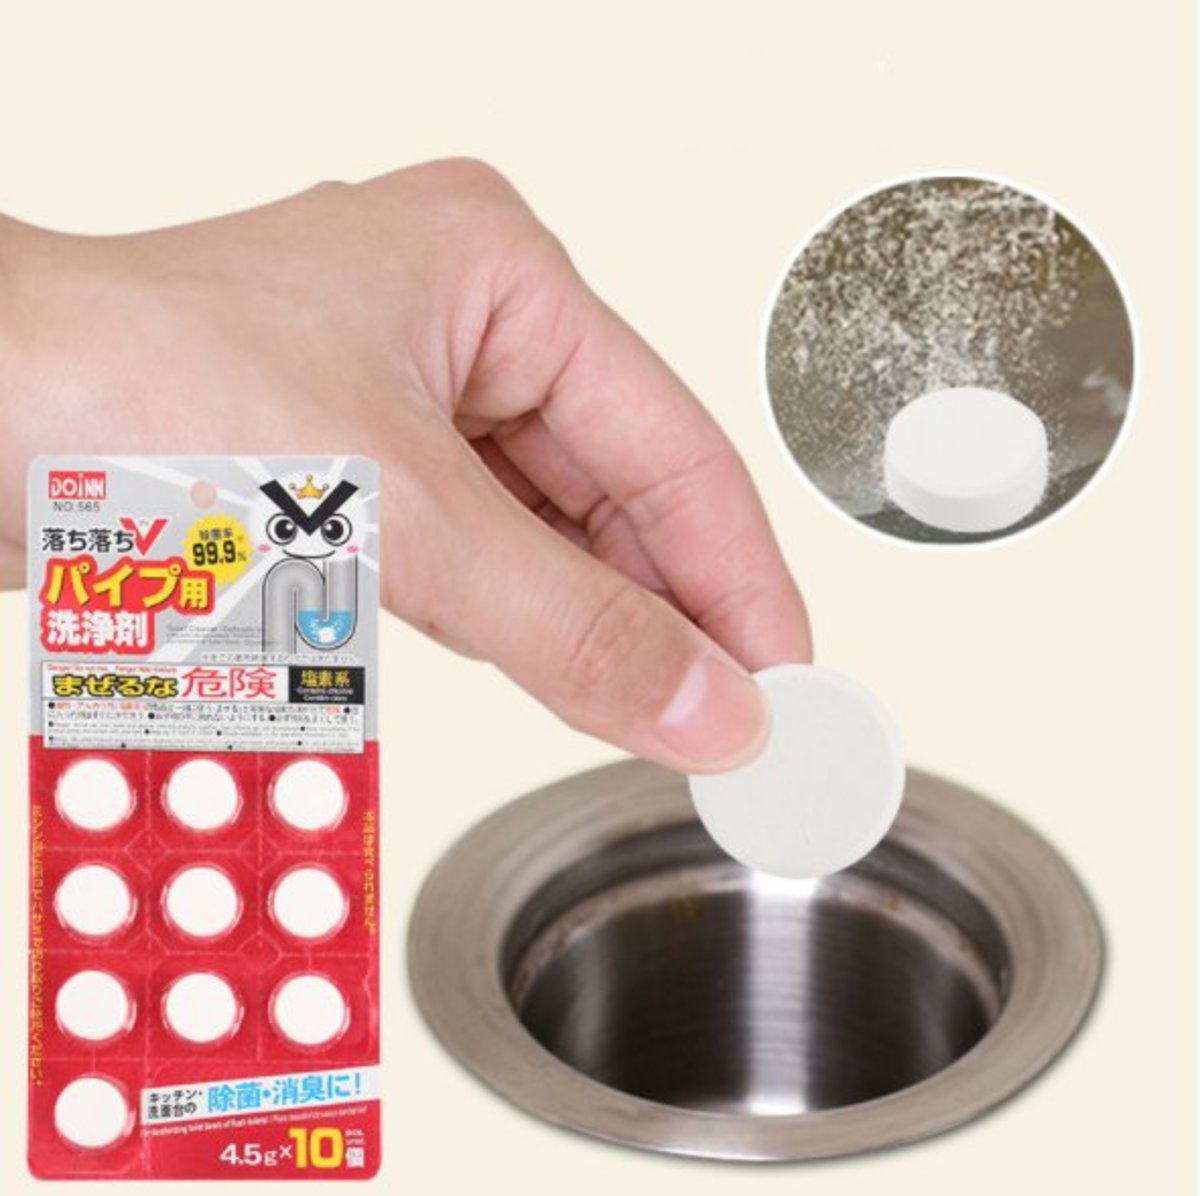 DOINN-日本排水管除菌消臭清潔錠 (10粒入) x 1包